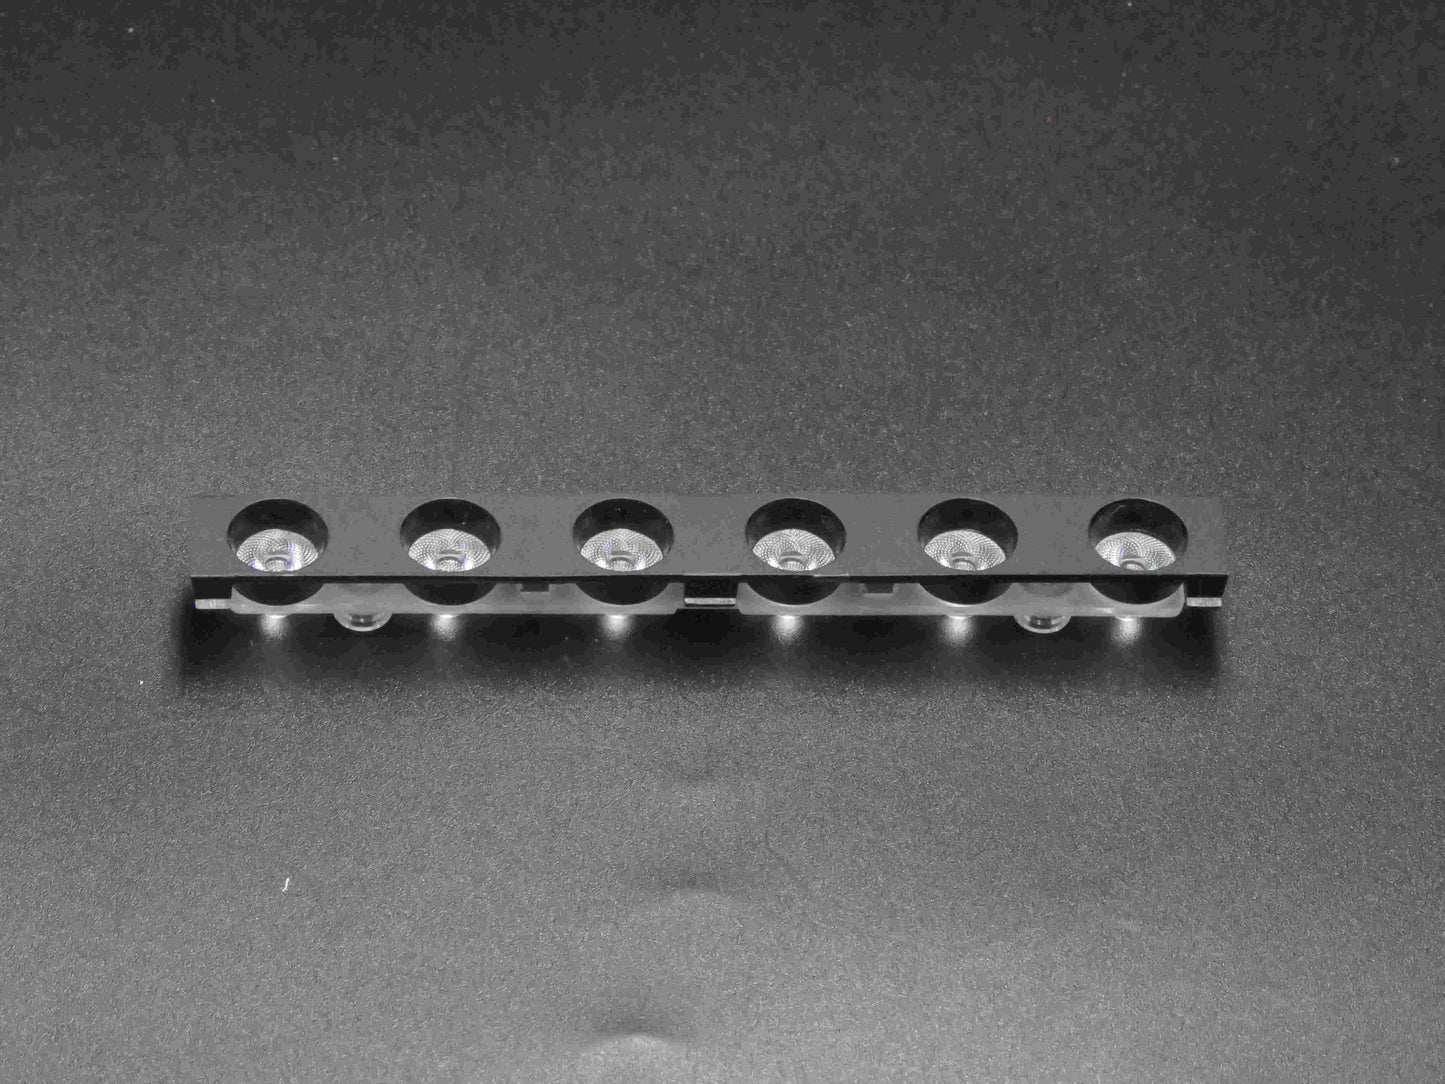 24 Grad 12 mm lineares Lichtlinsenarray für COB führte 3030 optische Linse kleine Linsenfabrik